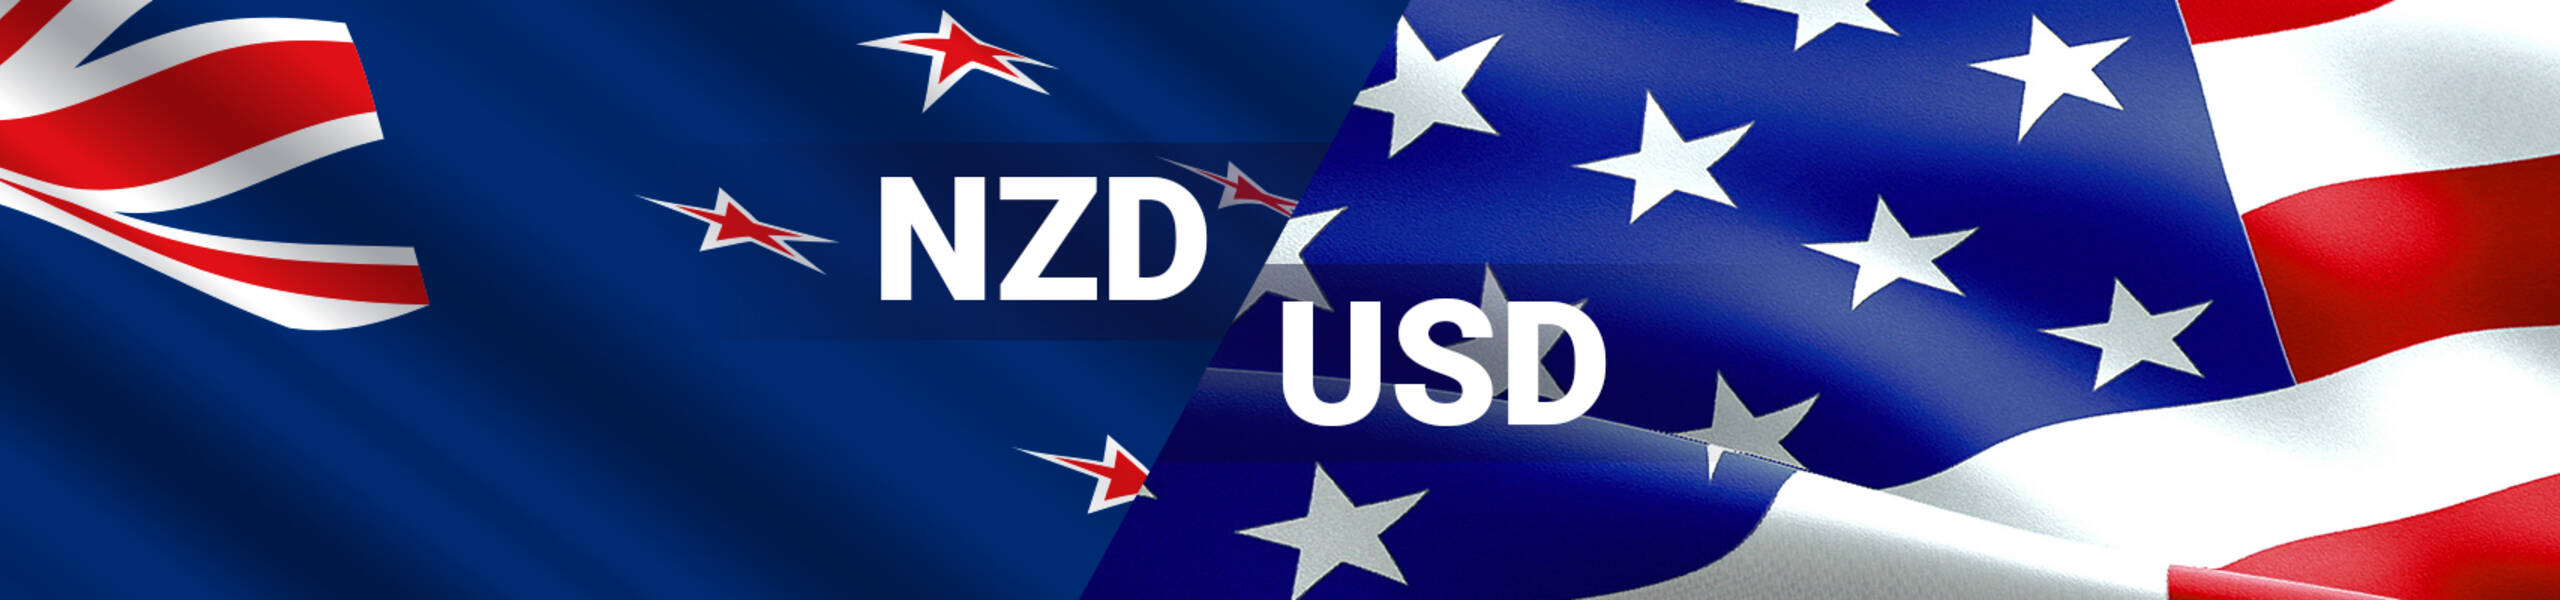 NZD/USD テクニカル分析 2018/01/28